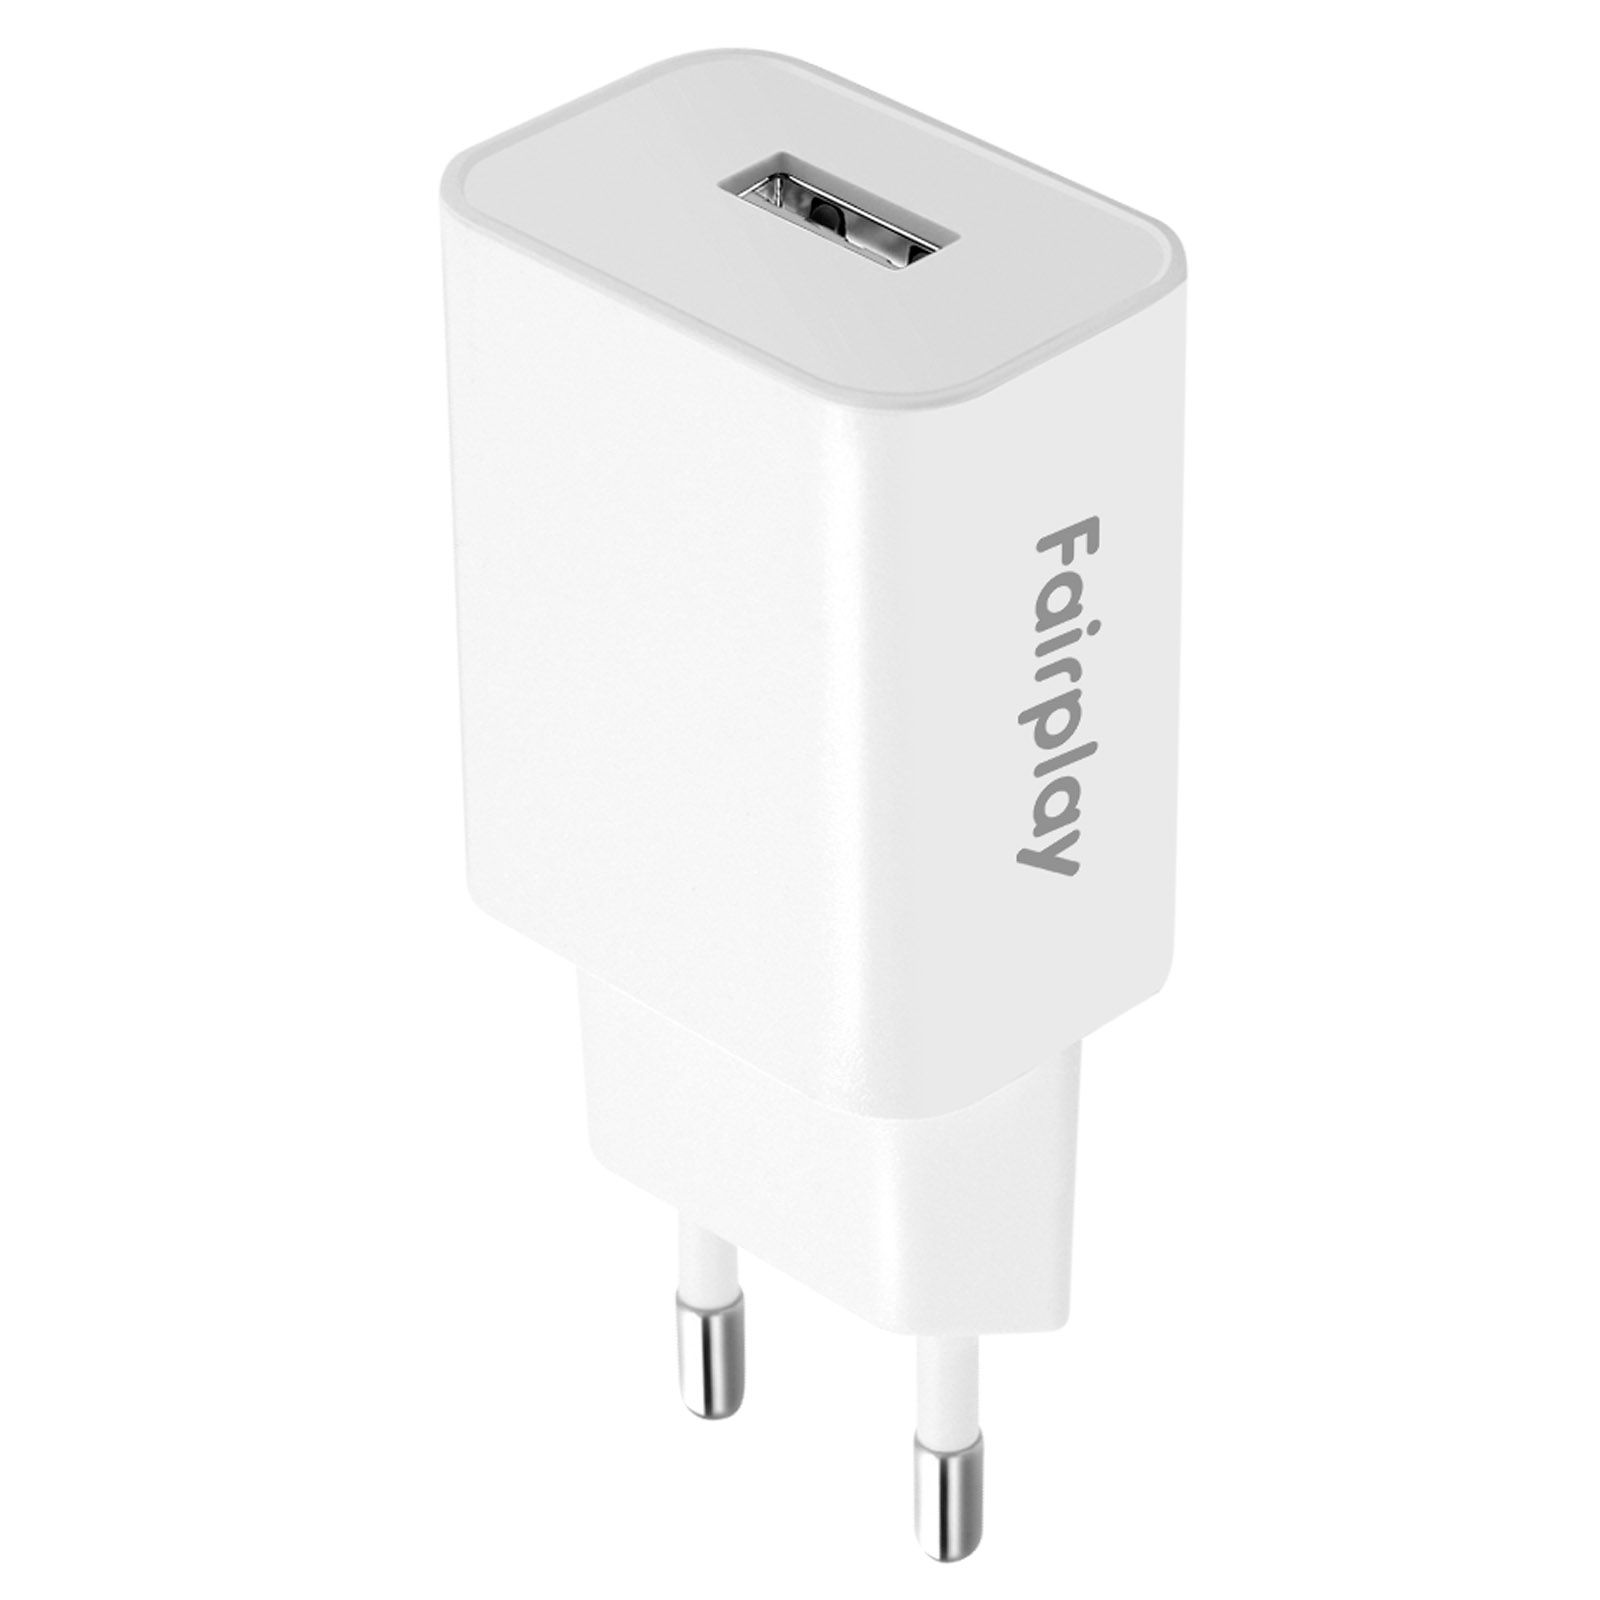 AVIZAR 5W USB-Ladegerät Netzteile Universal, Weiß